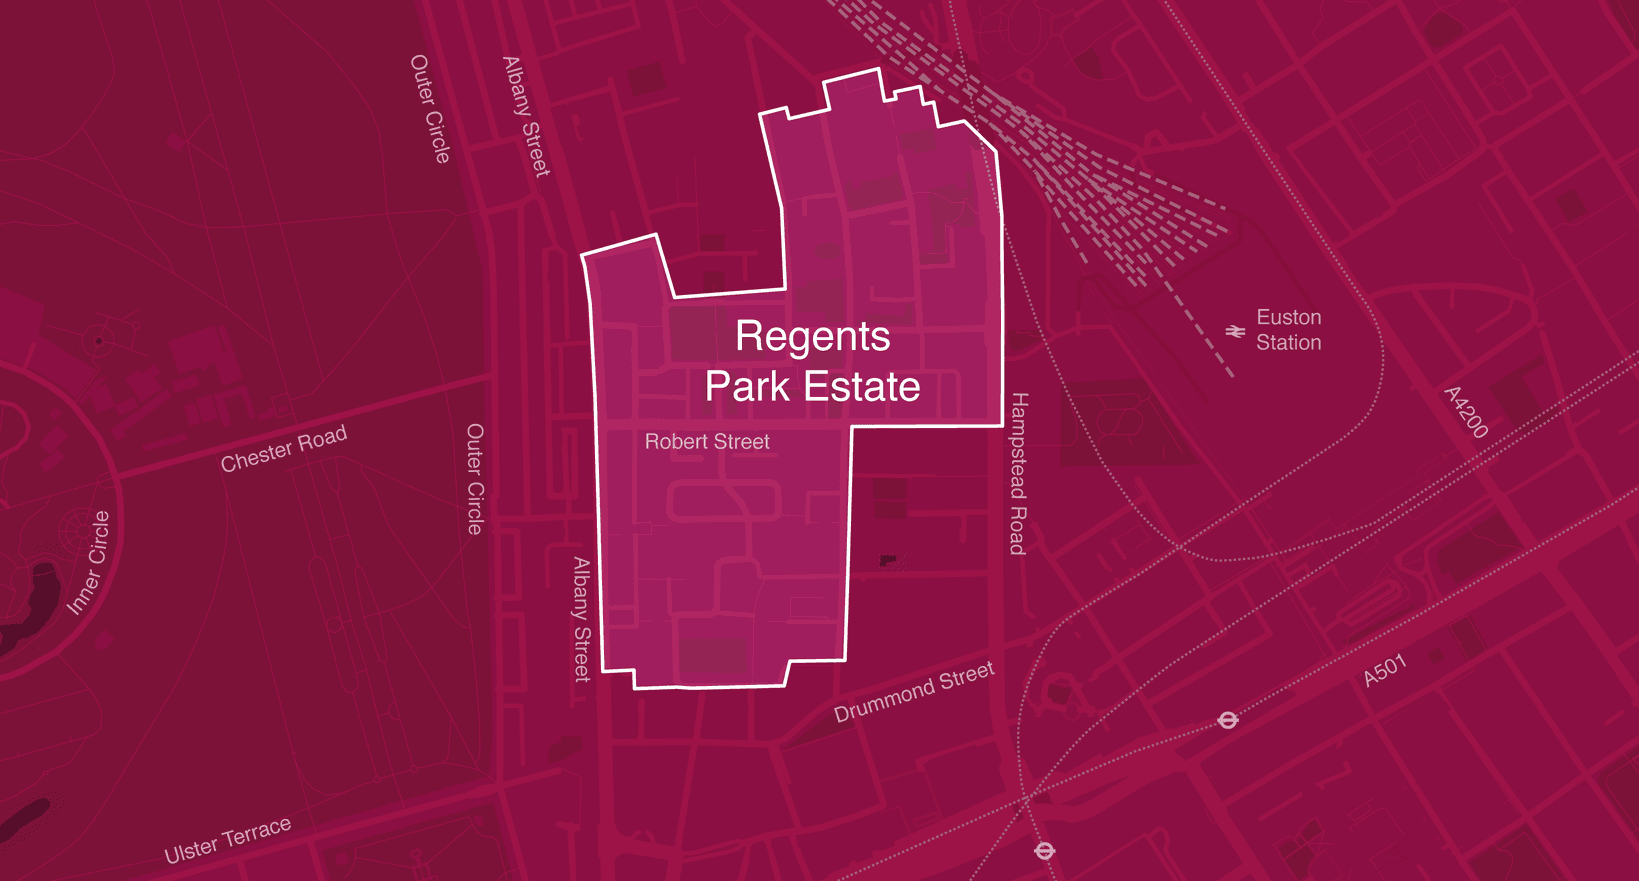 5436 Regents Park Estate 1400px by 752px 01